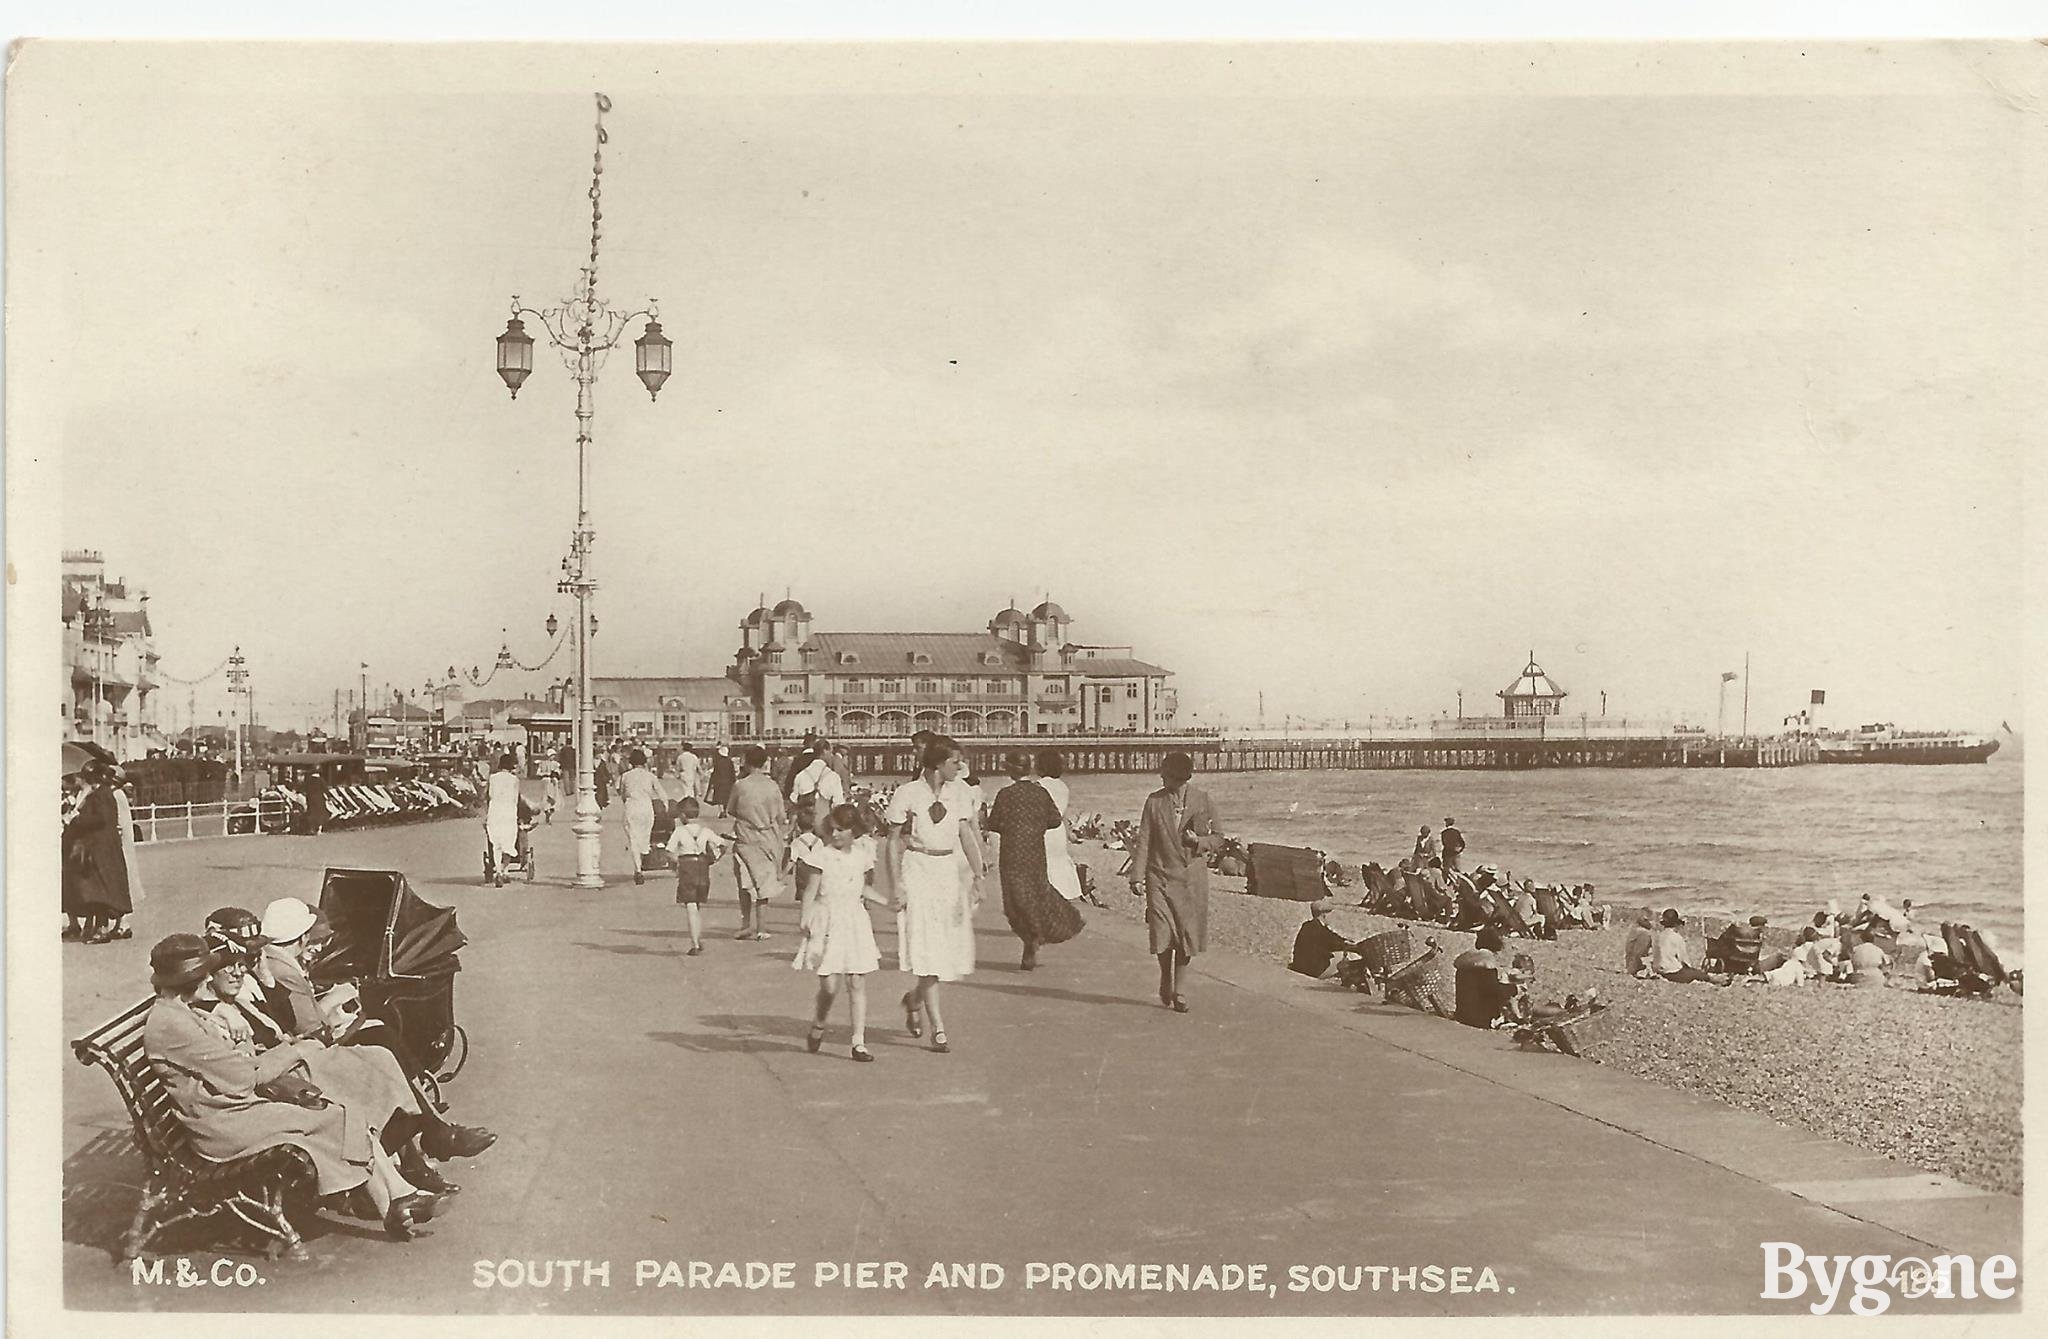 South Parade Pier and Promenade